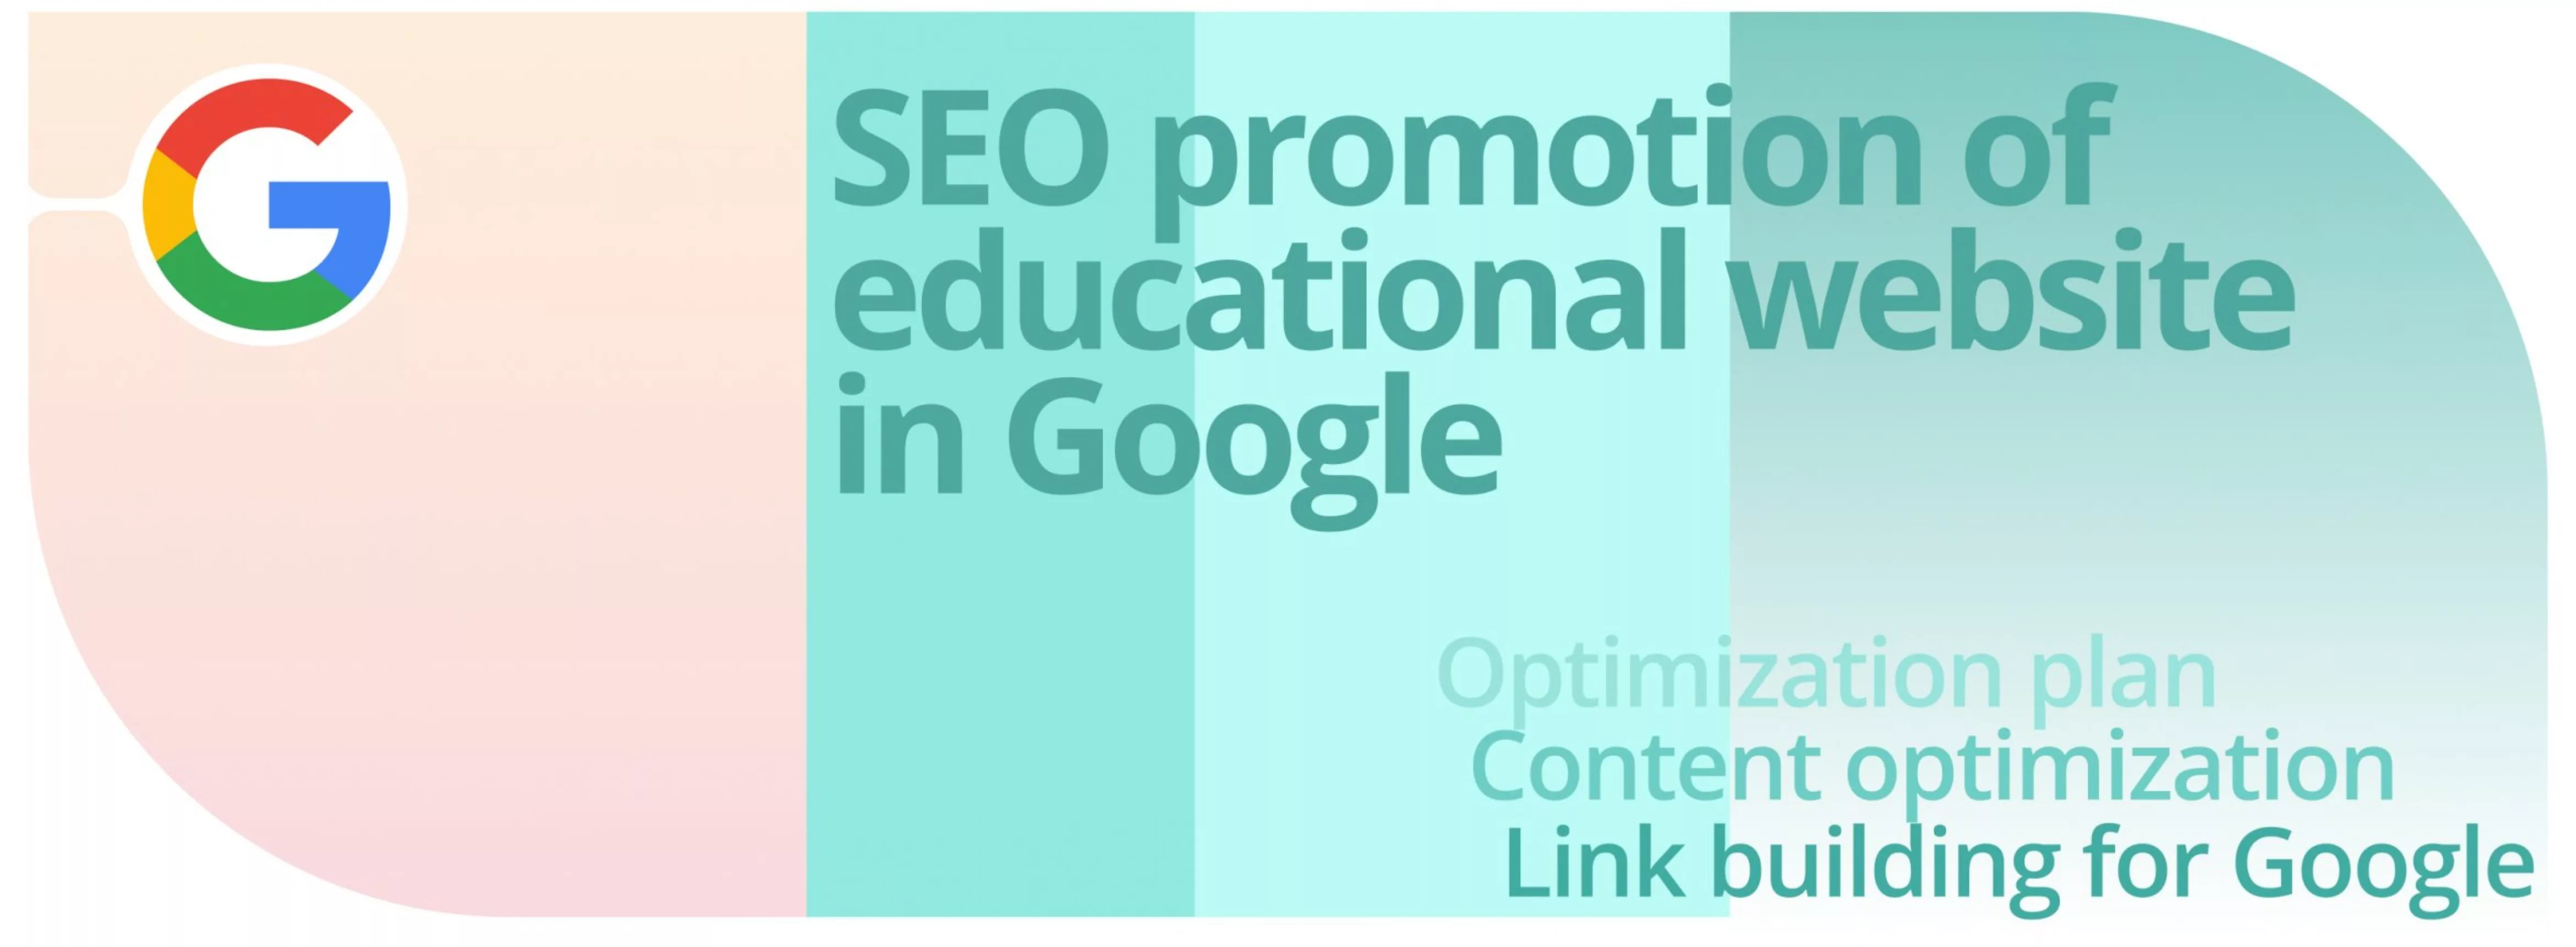 Caso: Promoção SEO de um sítio Web educativo no Google.